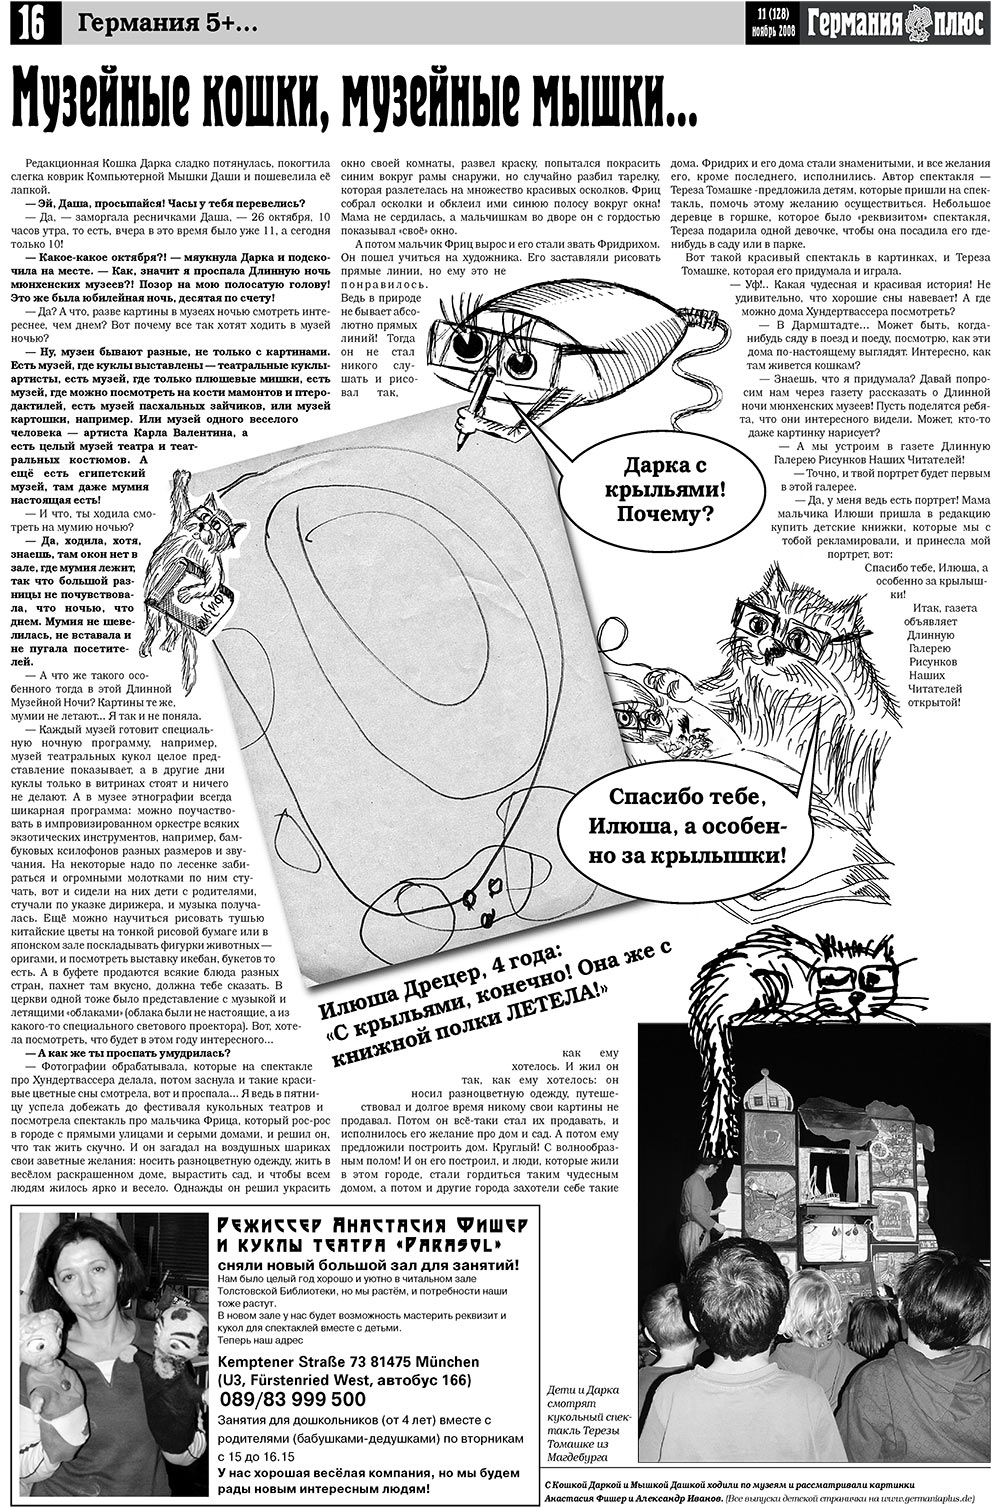 Германия плюс, газета. 2008 №11 стр.18